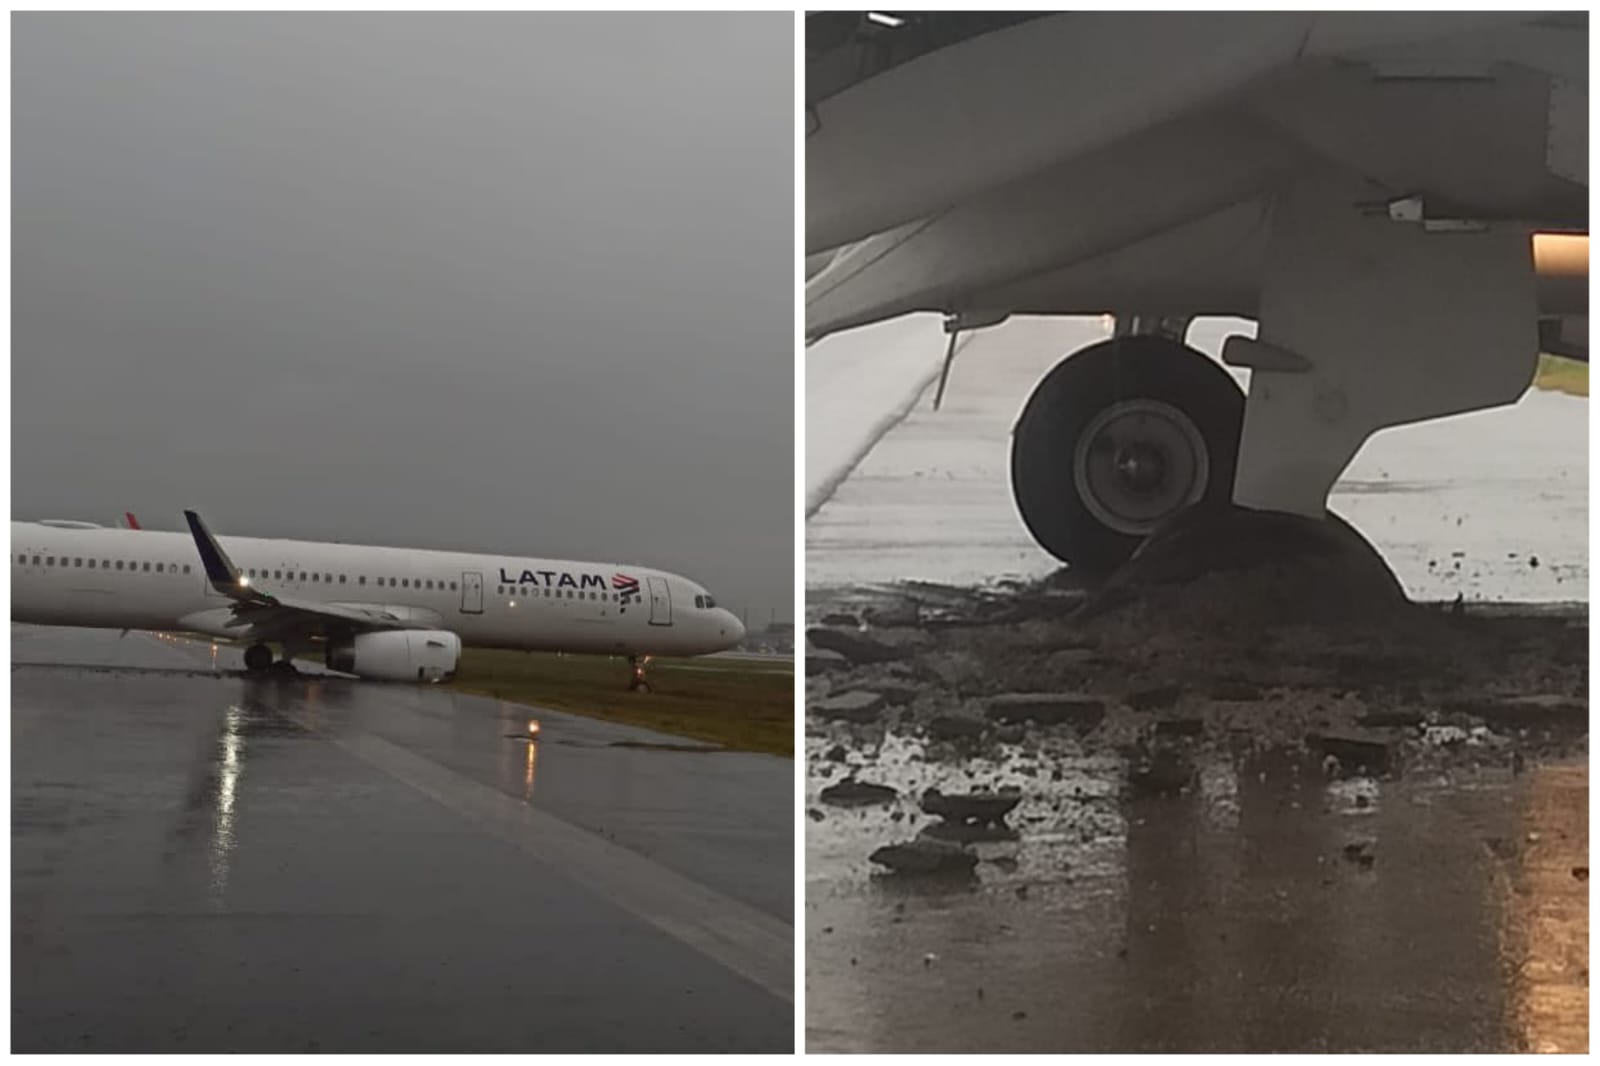 O avião ficou atravessado na pista de pouso - Foto: Reprodução/Twitter/@raphaelfaraco